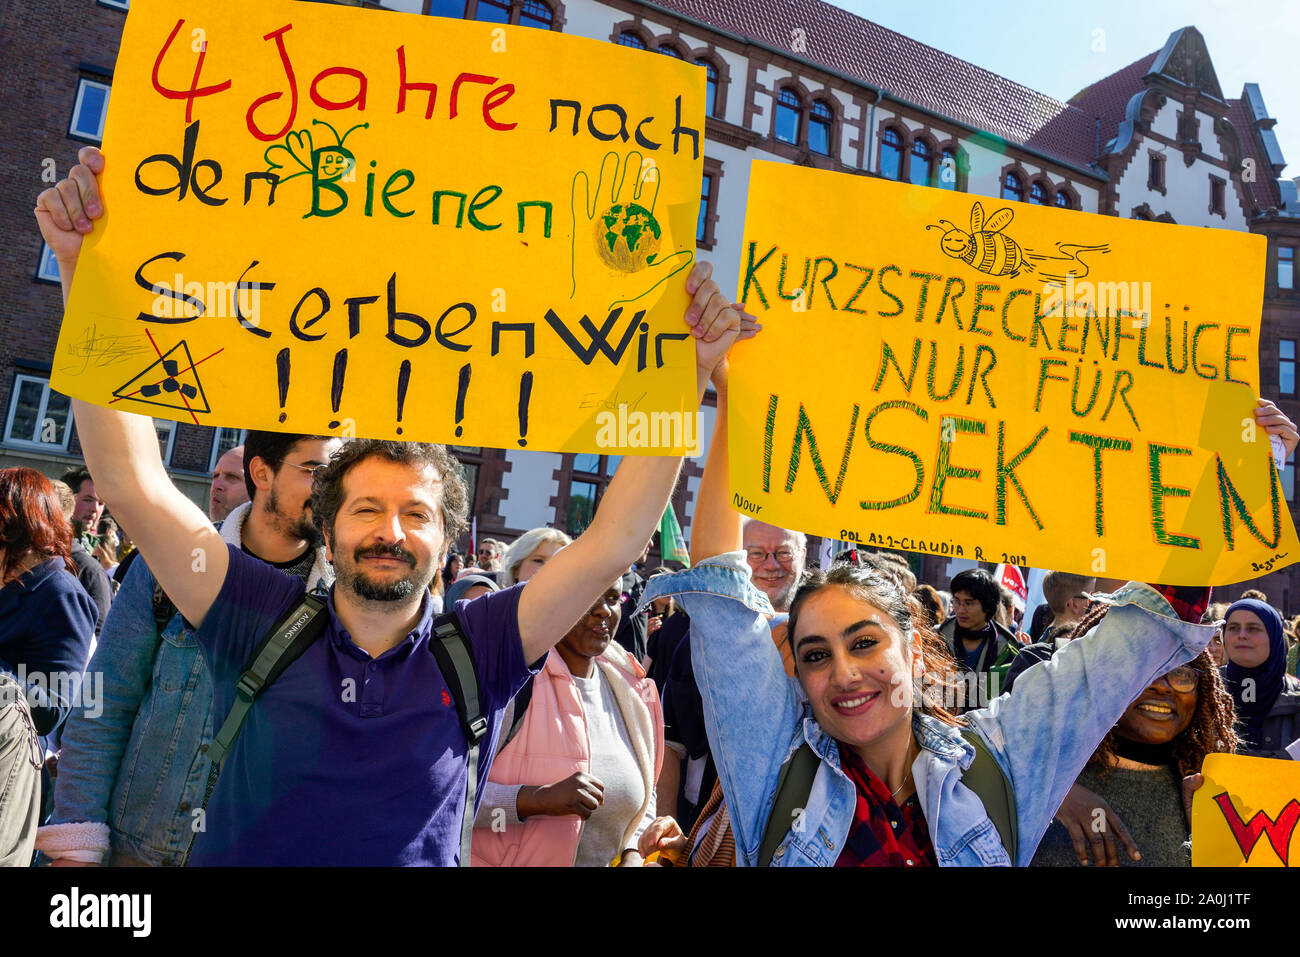 Dortmund/Deutschland, 20. Sept. 2019: Teilnehmer mit ihren Plakaten an den Freitagen für zukünftige Demonstration auf dem globalen Klimawandel Tag in Dortmund------- Dortmund, 20.09.2019: Teilnehmer mit Stand Plakaten bei der Freitags für Future-Demonstration am weltweiten Tag des Klimaschutzes in Dortmund, Deutschland Stockfoto